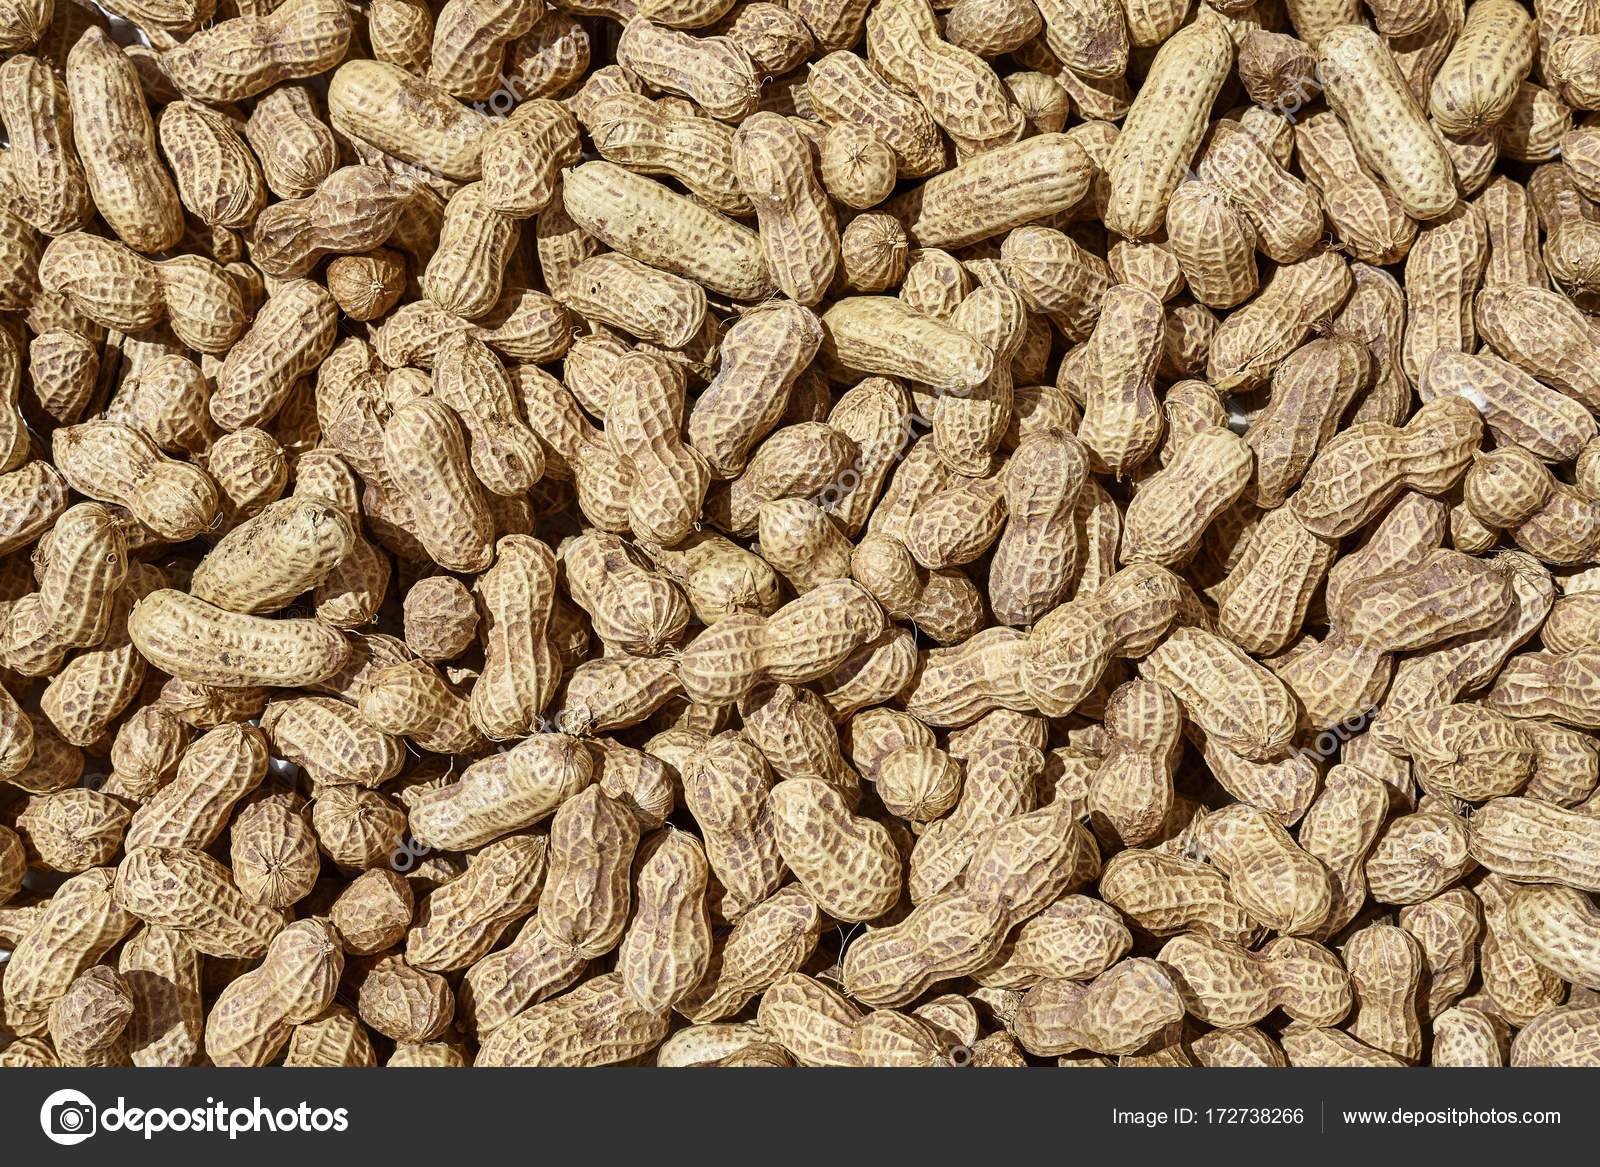 Аллергия на арахис: Аллергия на арахис - причины, симптомы и лечение